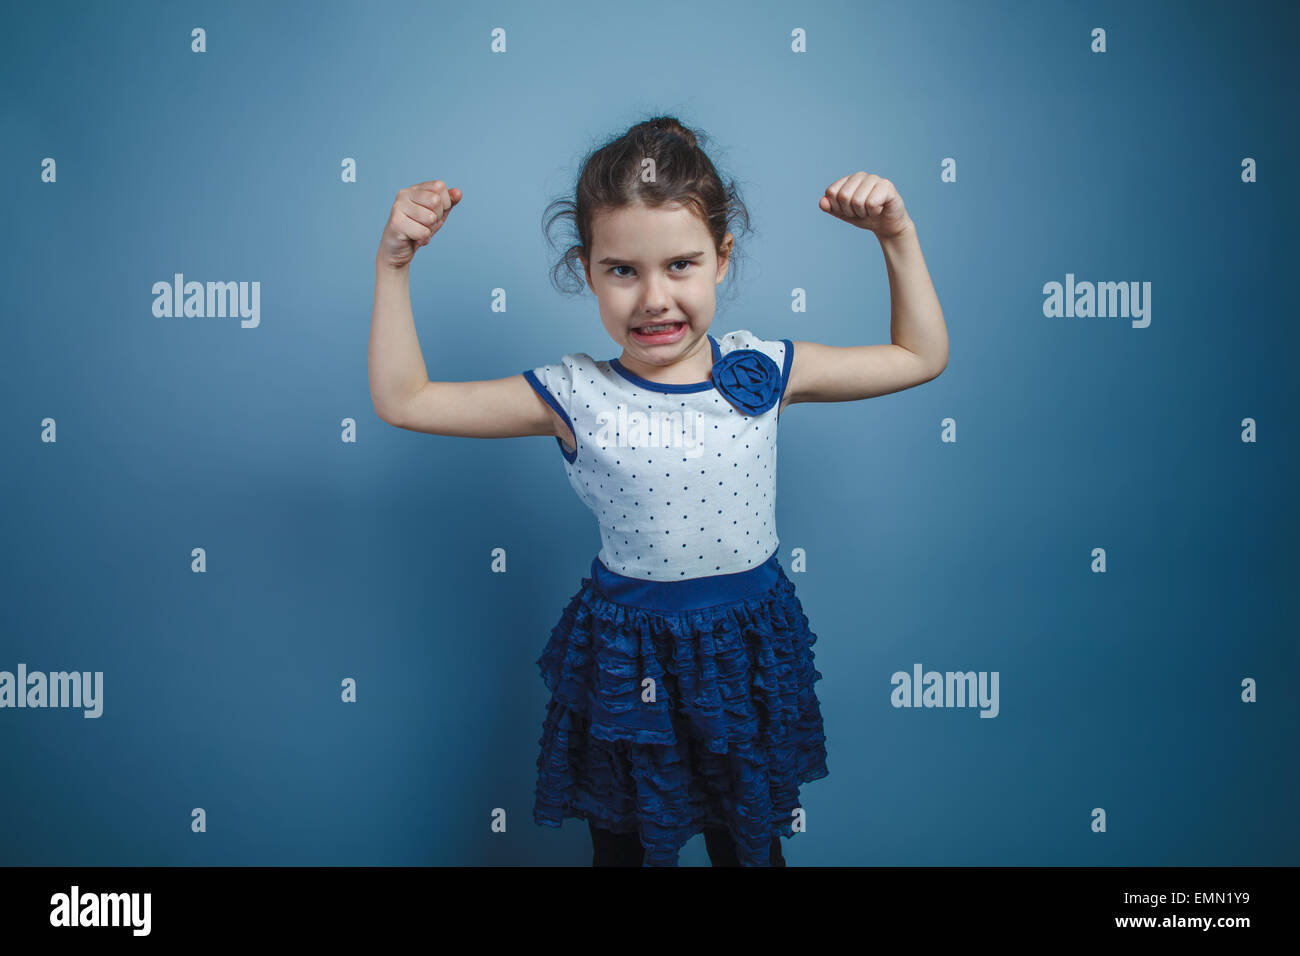 eine Mädchen von sieben europäischen Aussehen Brünette hob ihre Hände oben zeigt Stärke, Kraft Stockfoto